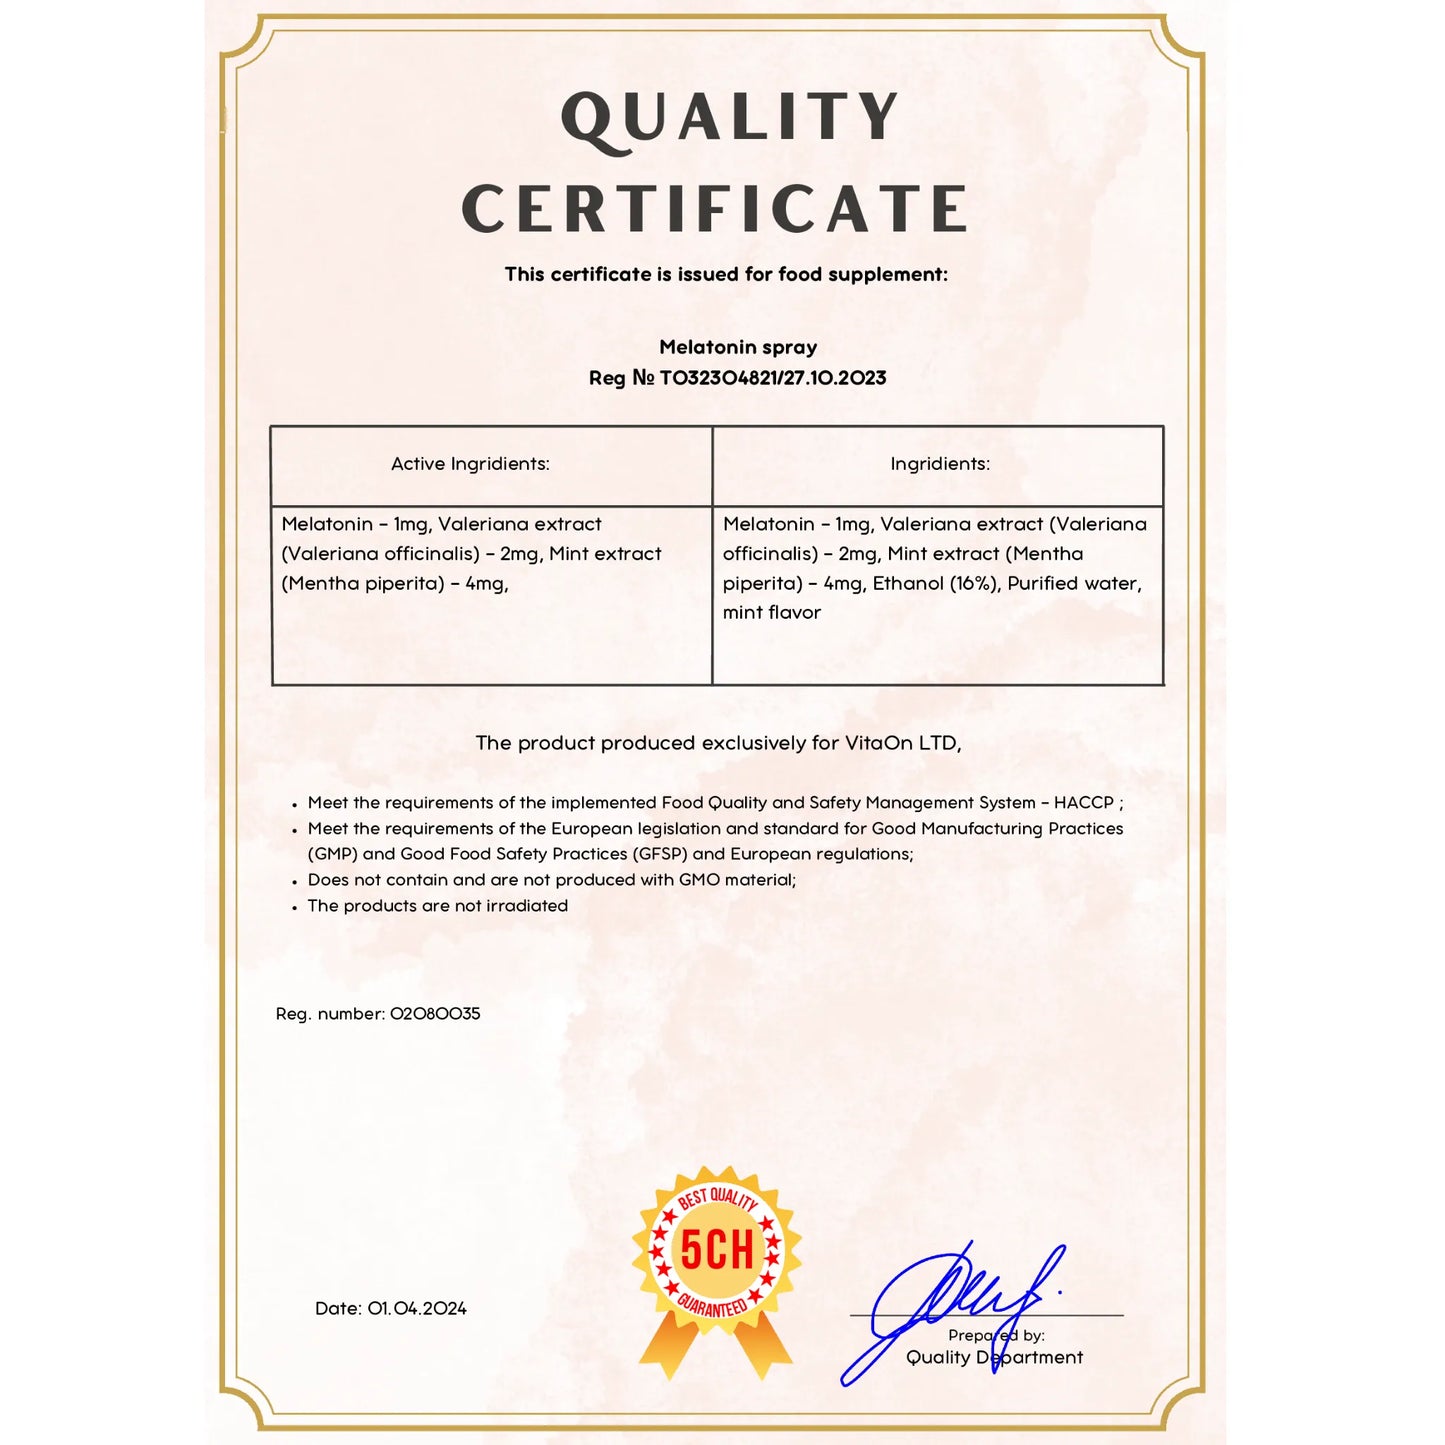 Certyfikat jakości melatonina w spreyu